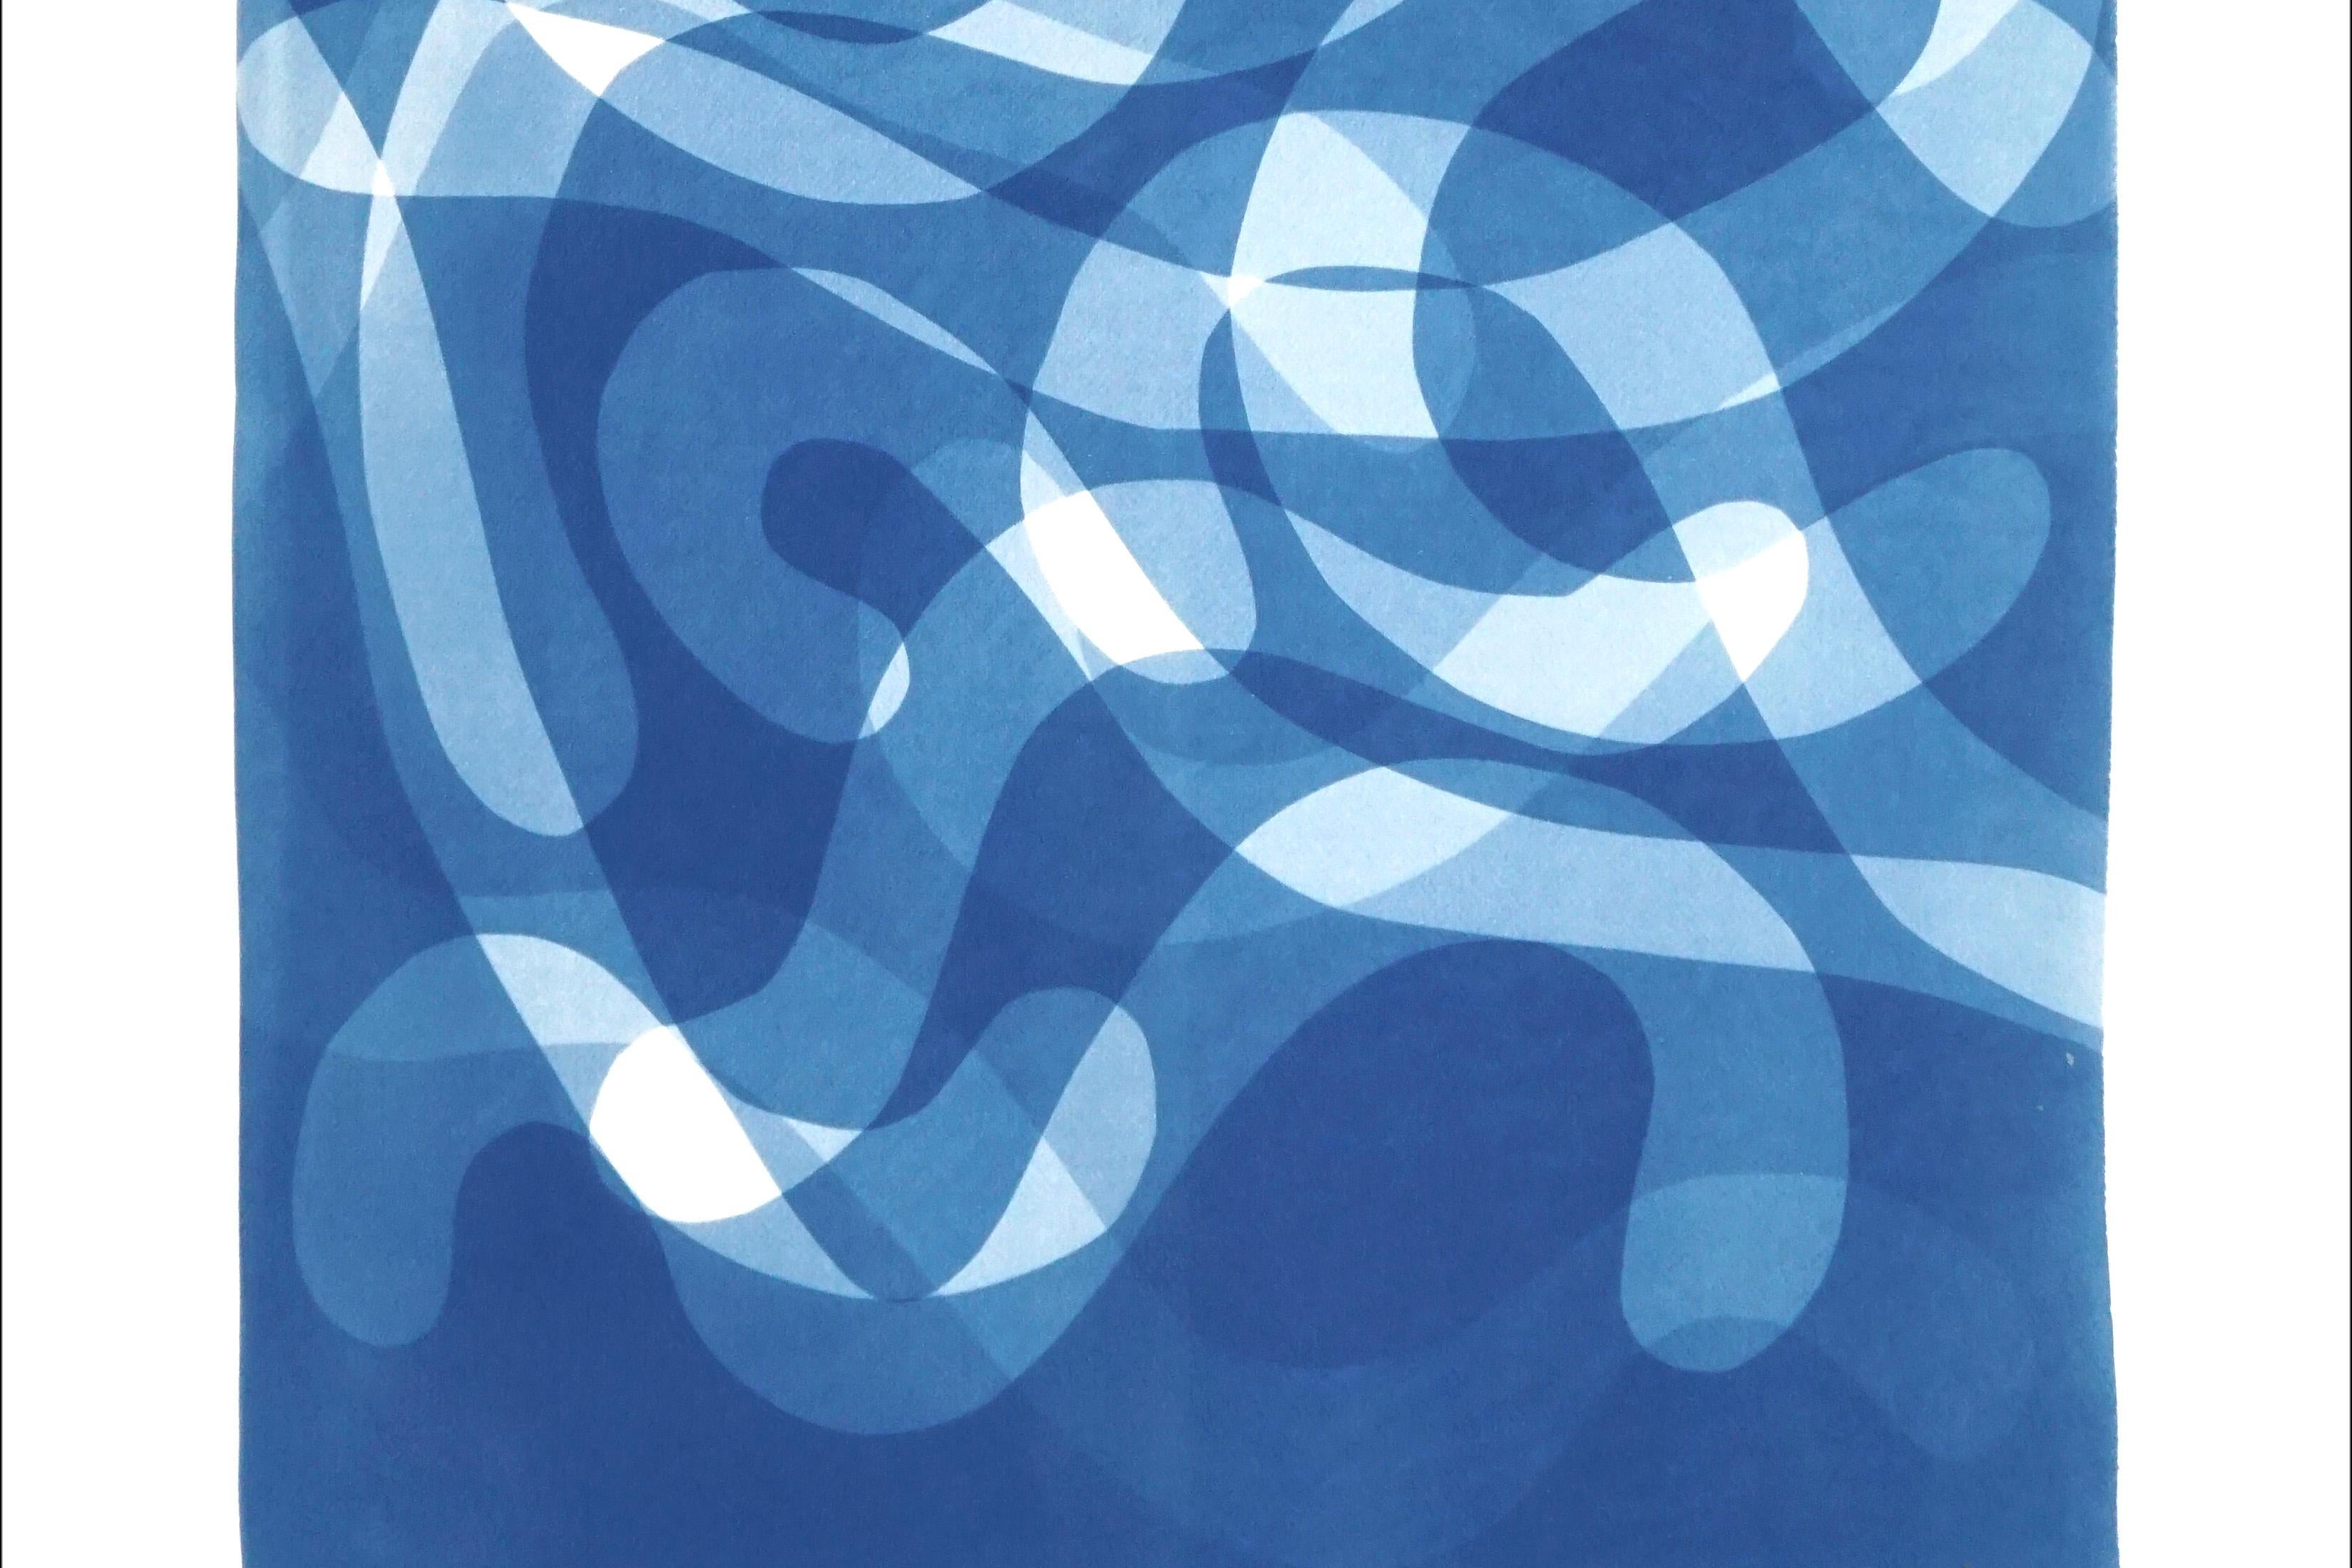 Des tourbillons tombés, couches courbes organiques dans les tons bleus, cyanotype sur papier fait à la main - Bleu Abstract Photograph par Kind of Cyan